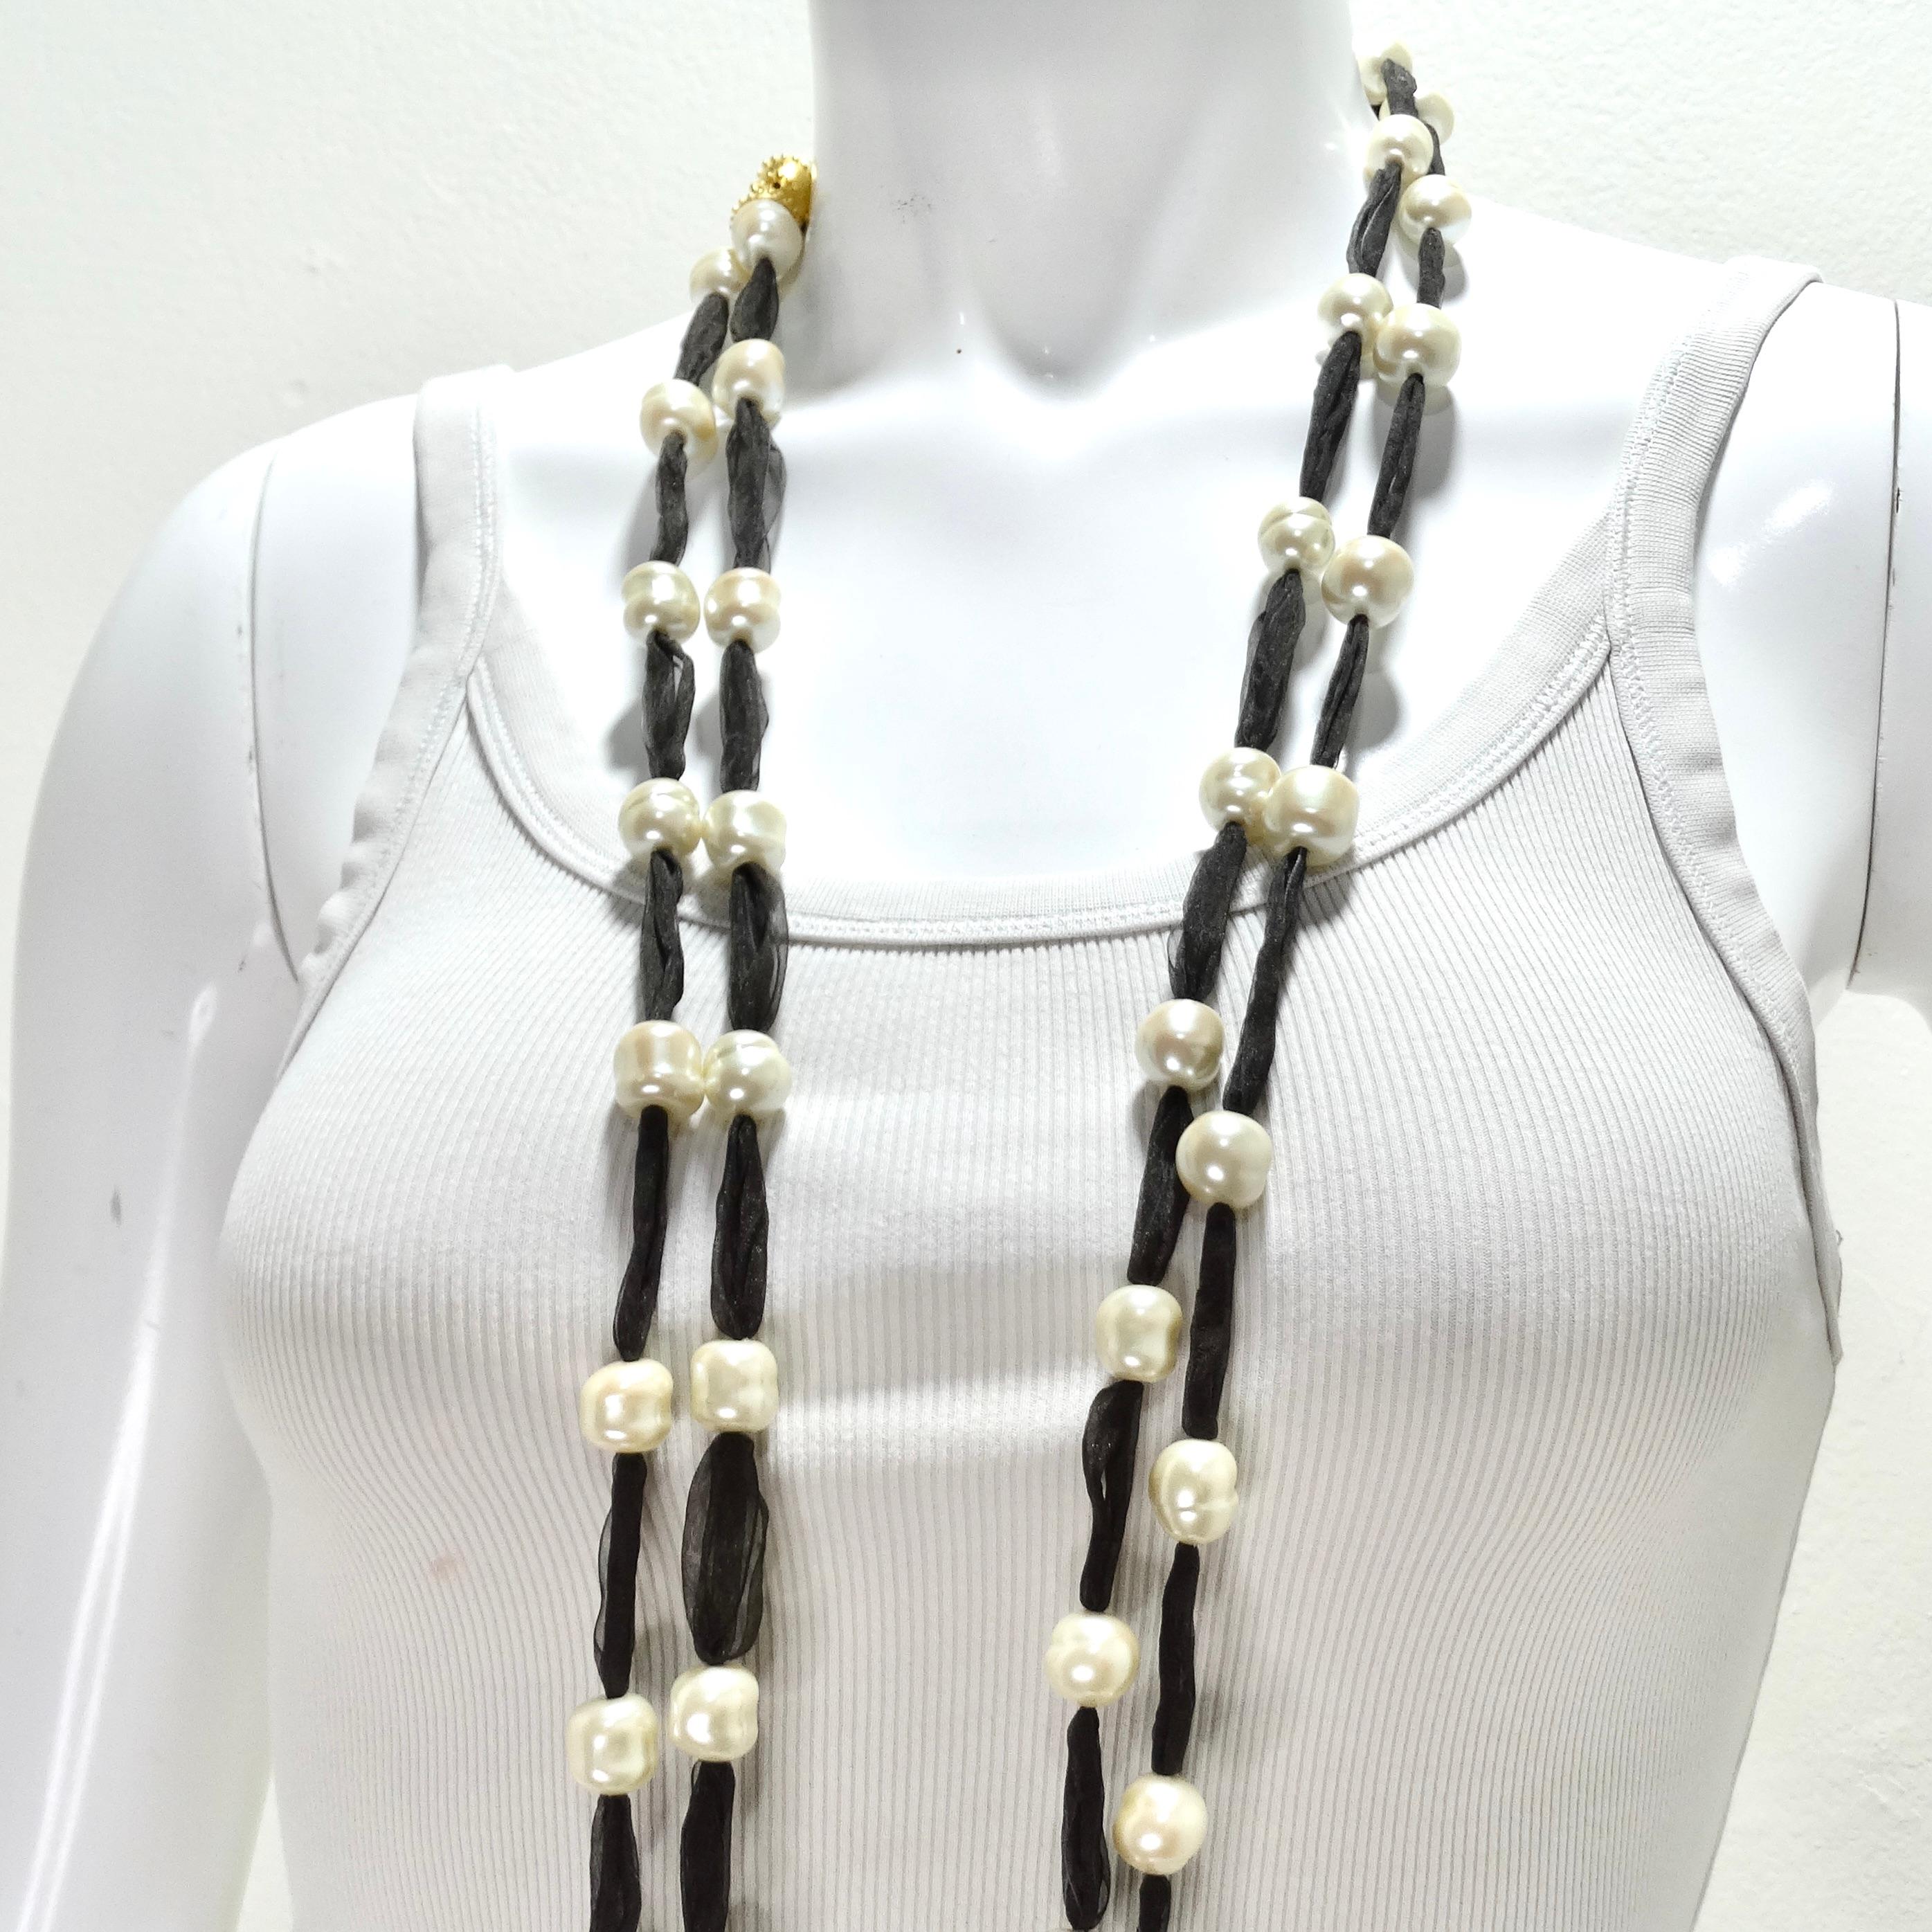 Verbessern Sie Ihren Stil mit dem Jaded Jewels 2er-Set langer Süßwasserperlen-Band-Halsketten, einem Paar atemberaubender und vielseitiger Halsketten, die die zeitlose Schönheit von Süßwasserperlen mit einem dunkelbraunen durchsichtigen Band